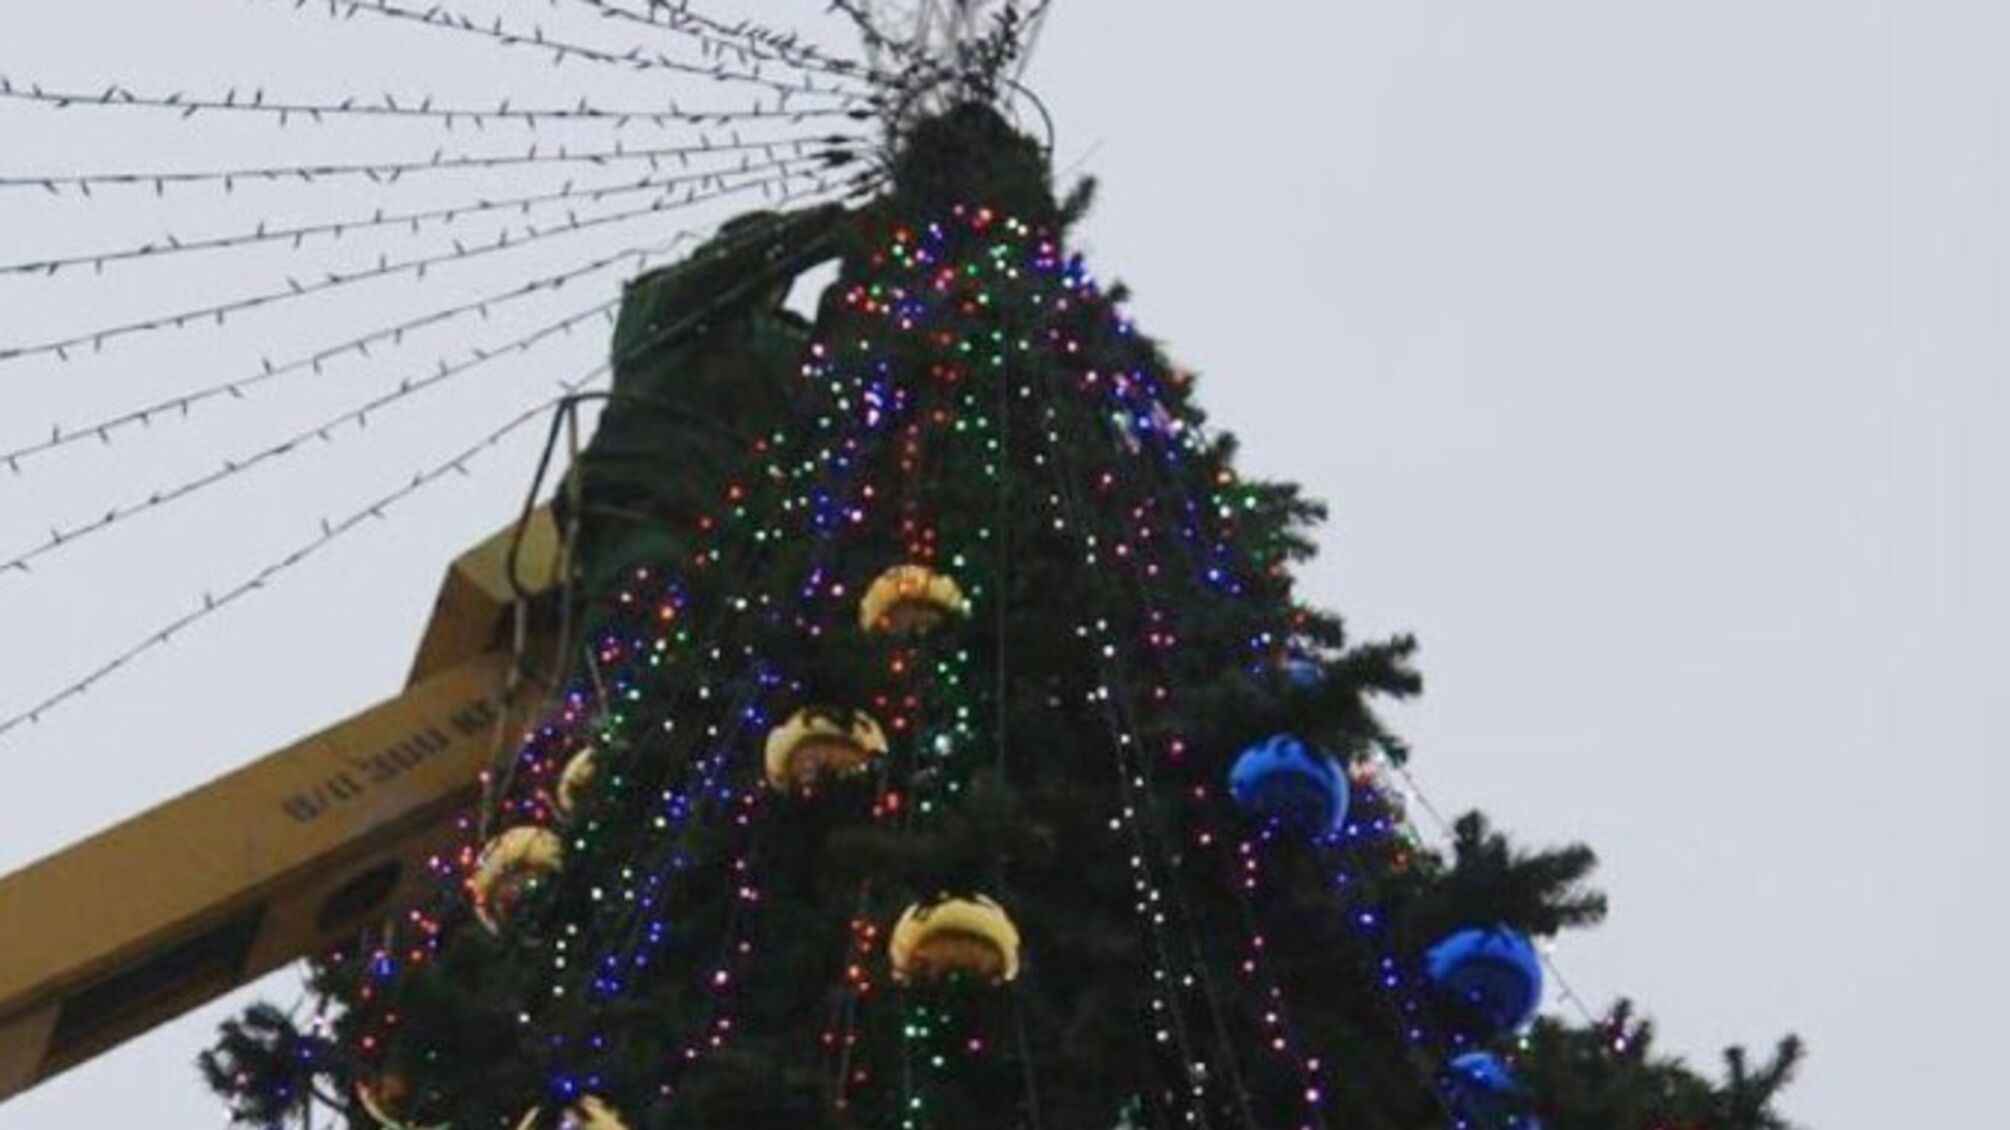 Диверсия в Крыму: в Керчи поставили елку с желтыми и синими игрушками (фото)